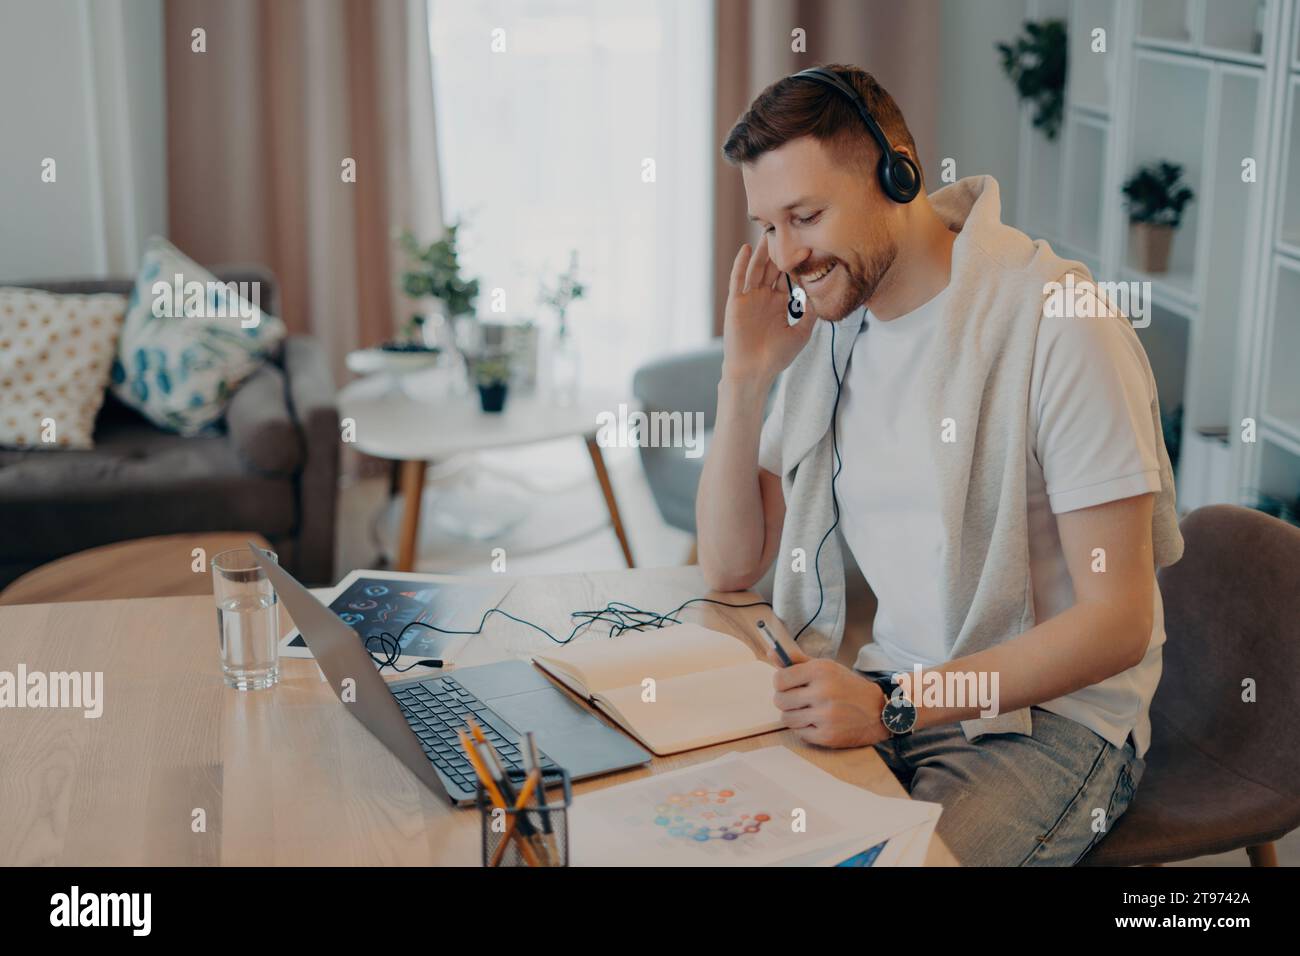 Freelance joyeuse avec des écouteurs engagés dans un appel en ligne dans une configuration confortable à la maison, illustrant le mode de vie moderne du télétravail Banque D'Images